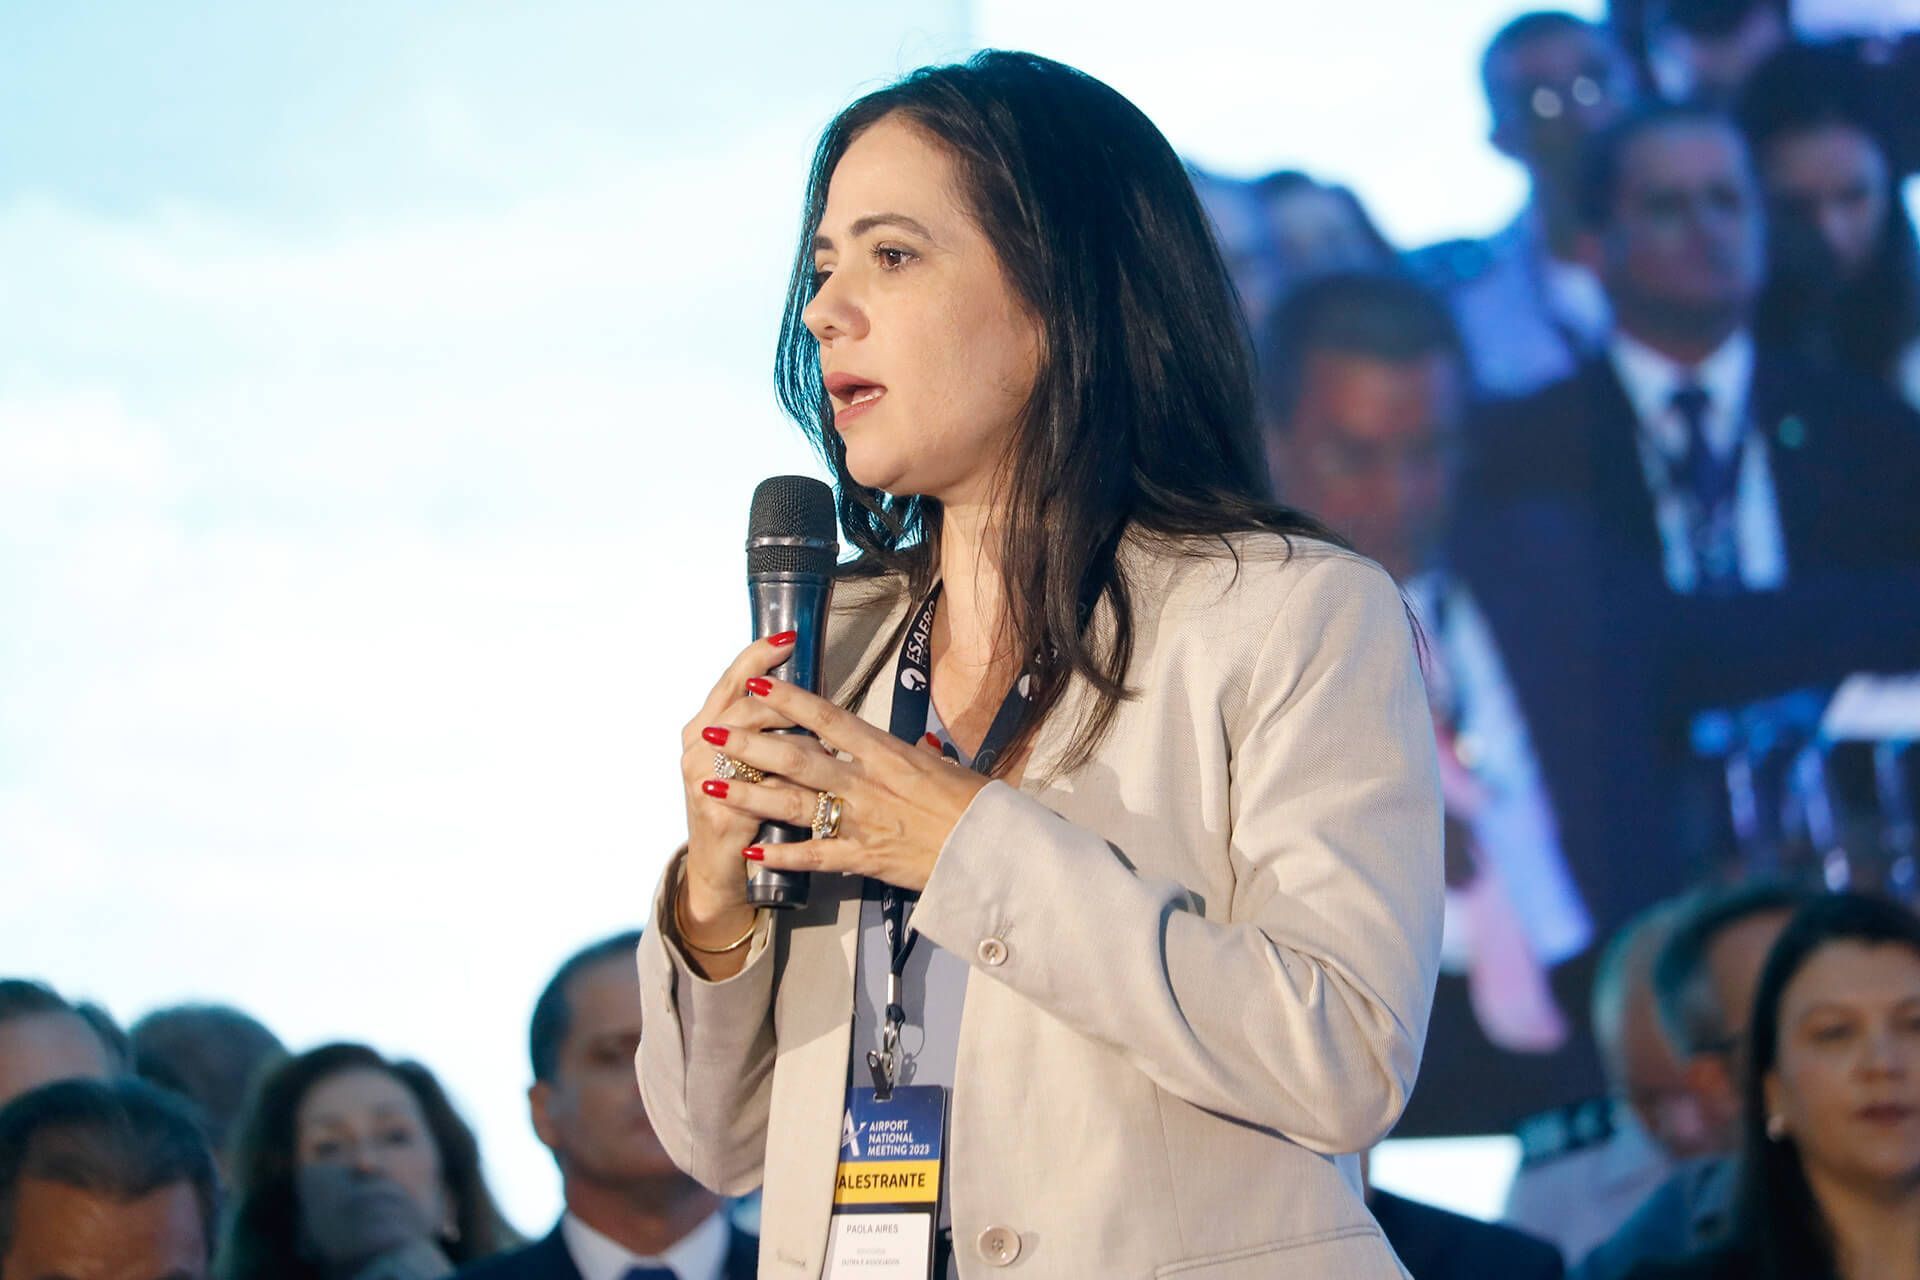 Paola Aires, sócia e advogada da Dutra e Associados